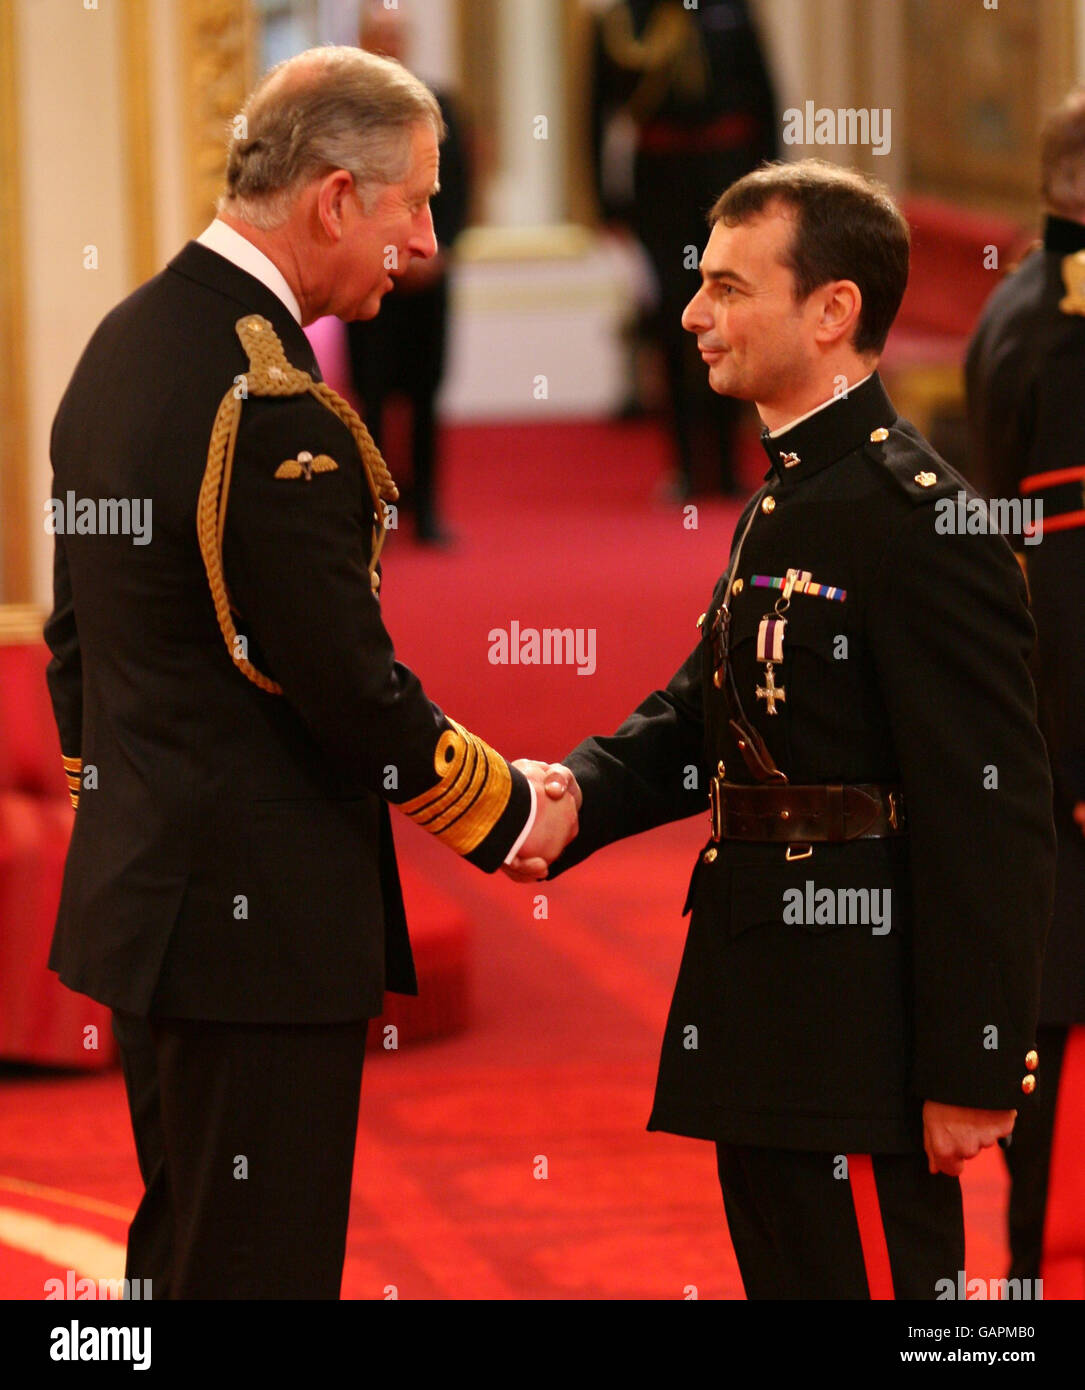 Le Major Ian Crowley est décoré de la Croix militaire par le Prince de Galles au Palais de Buckingham. Banque D'Images